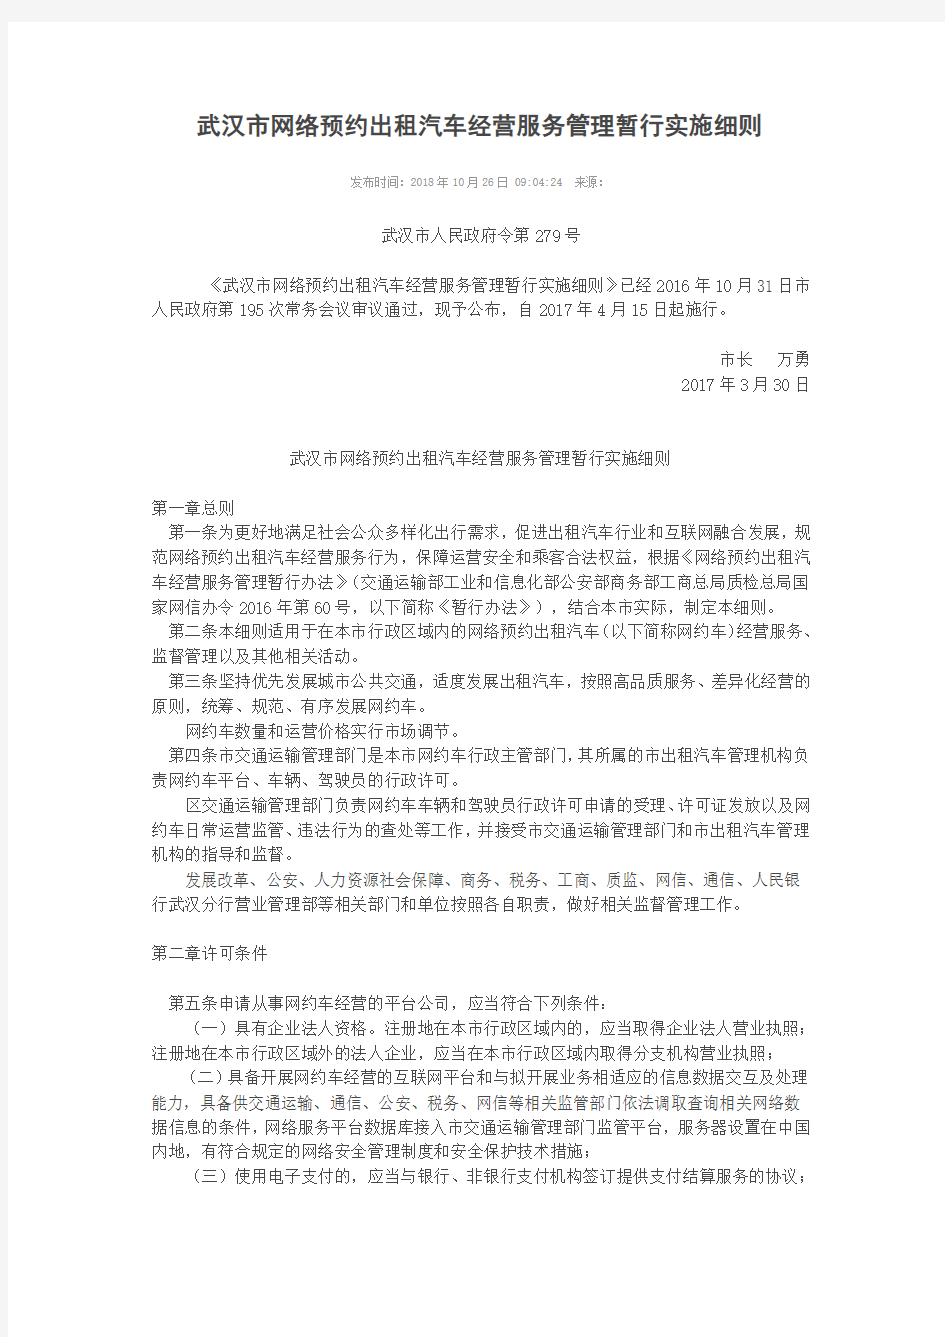 武汉市网络预约出租汽车经营服务管理暂行实施细则